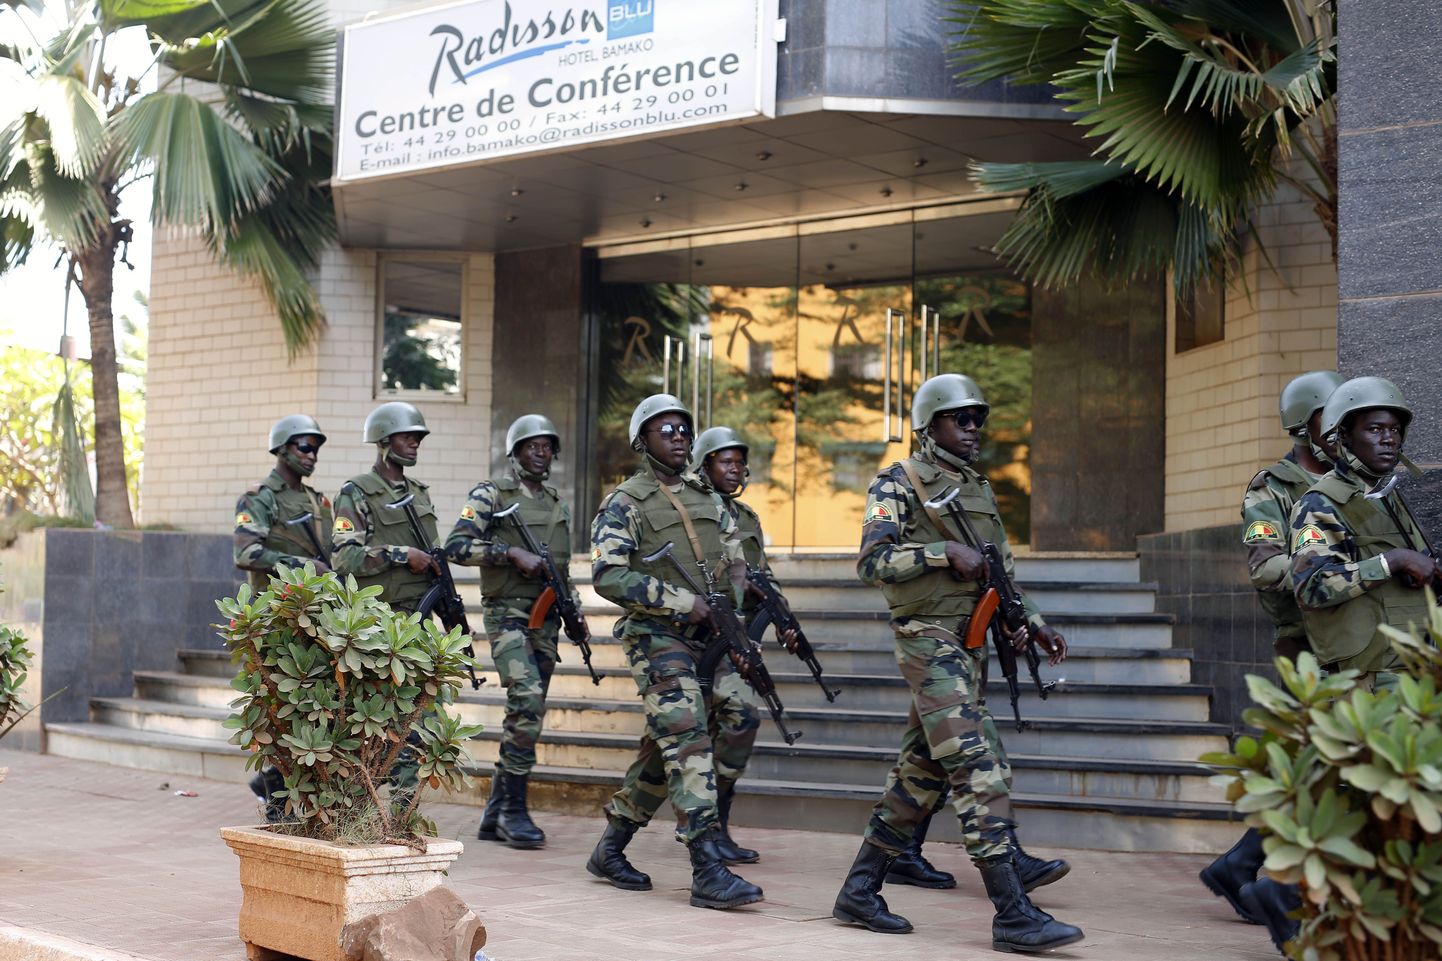 Mali sõdurid patrullimas Bamako Radisson Blu hotelli ees pärast eile toimunud ohvriterohket rünnakut.